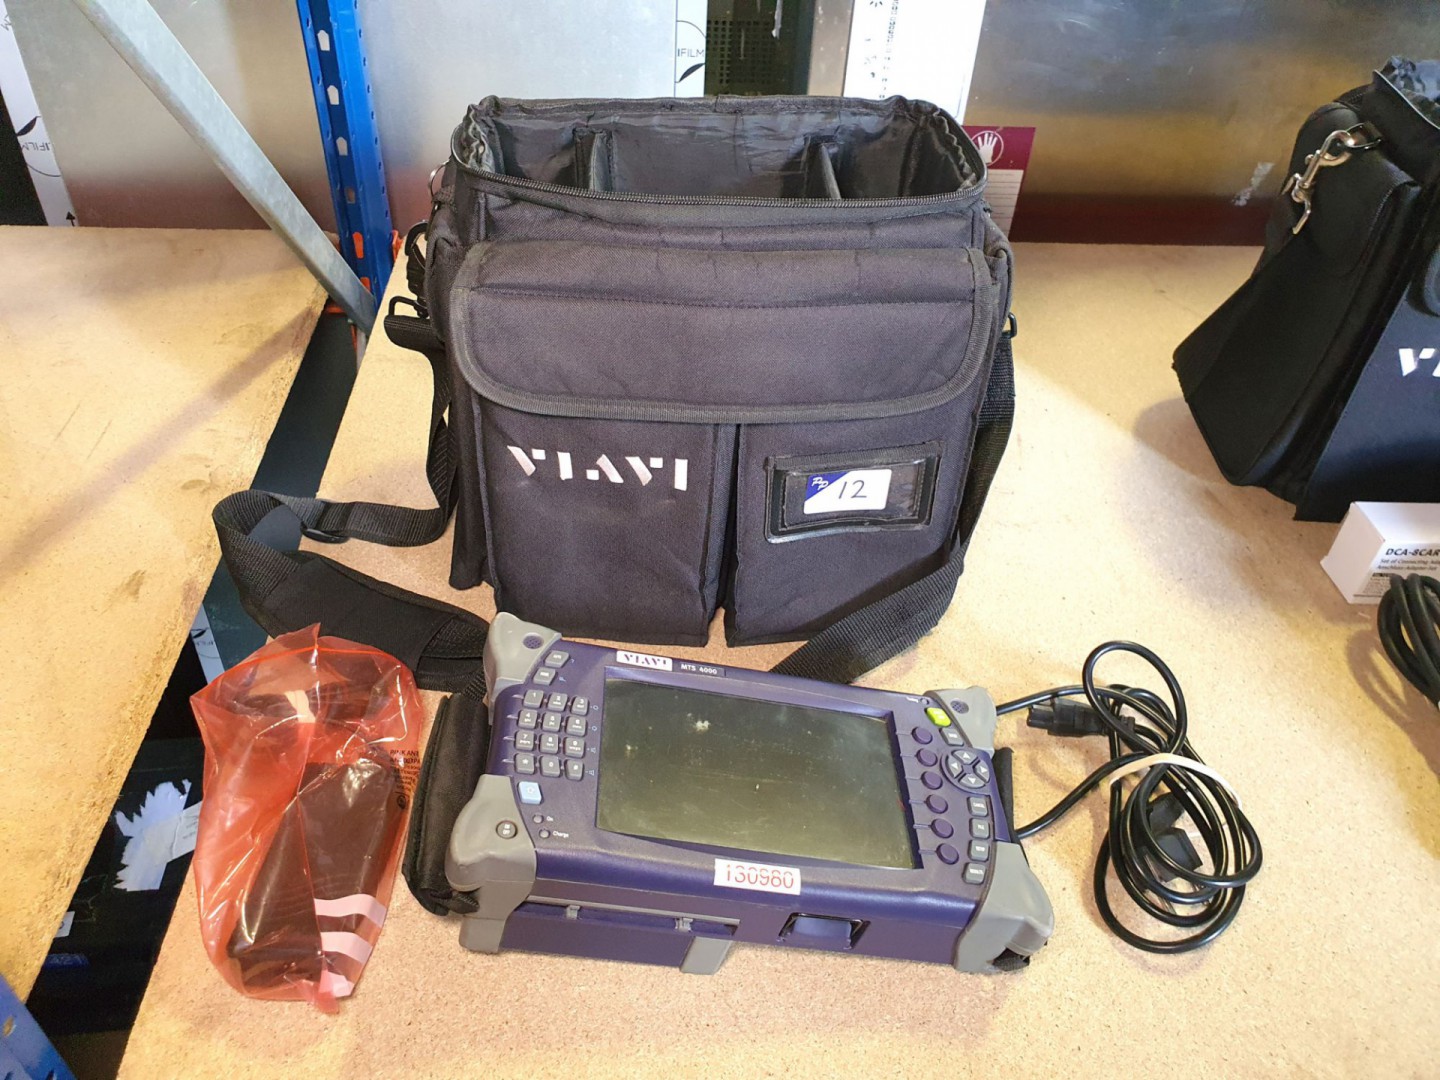 Viavi MTS 4000 handheld test set in carry case